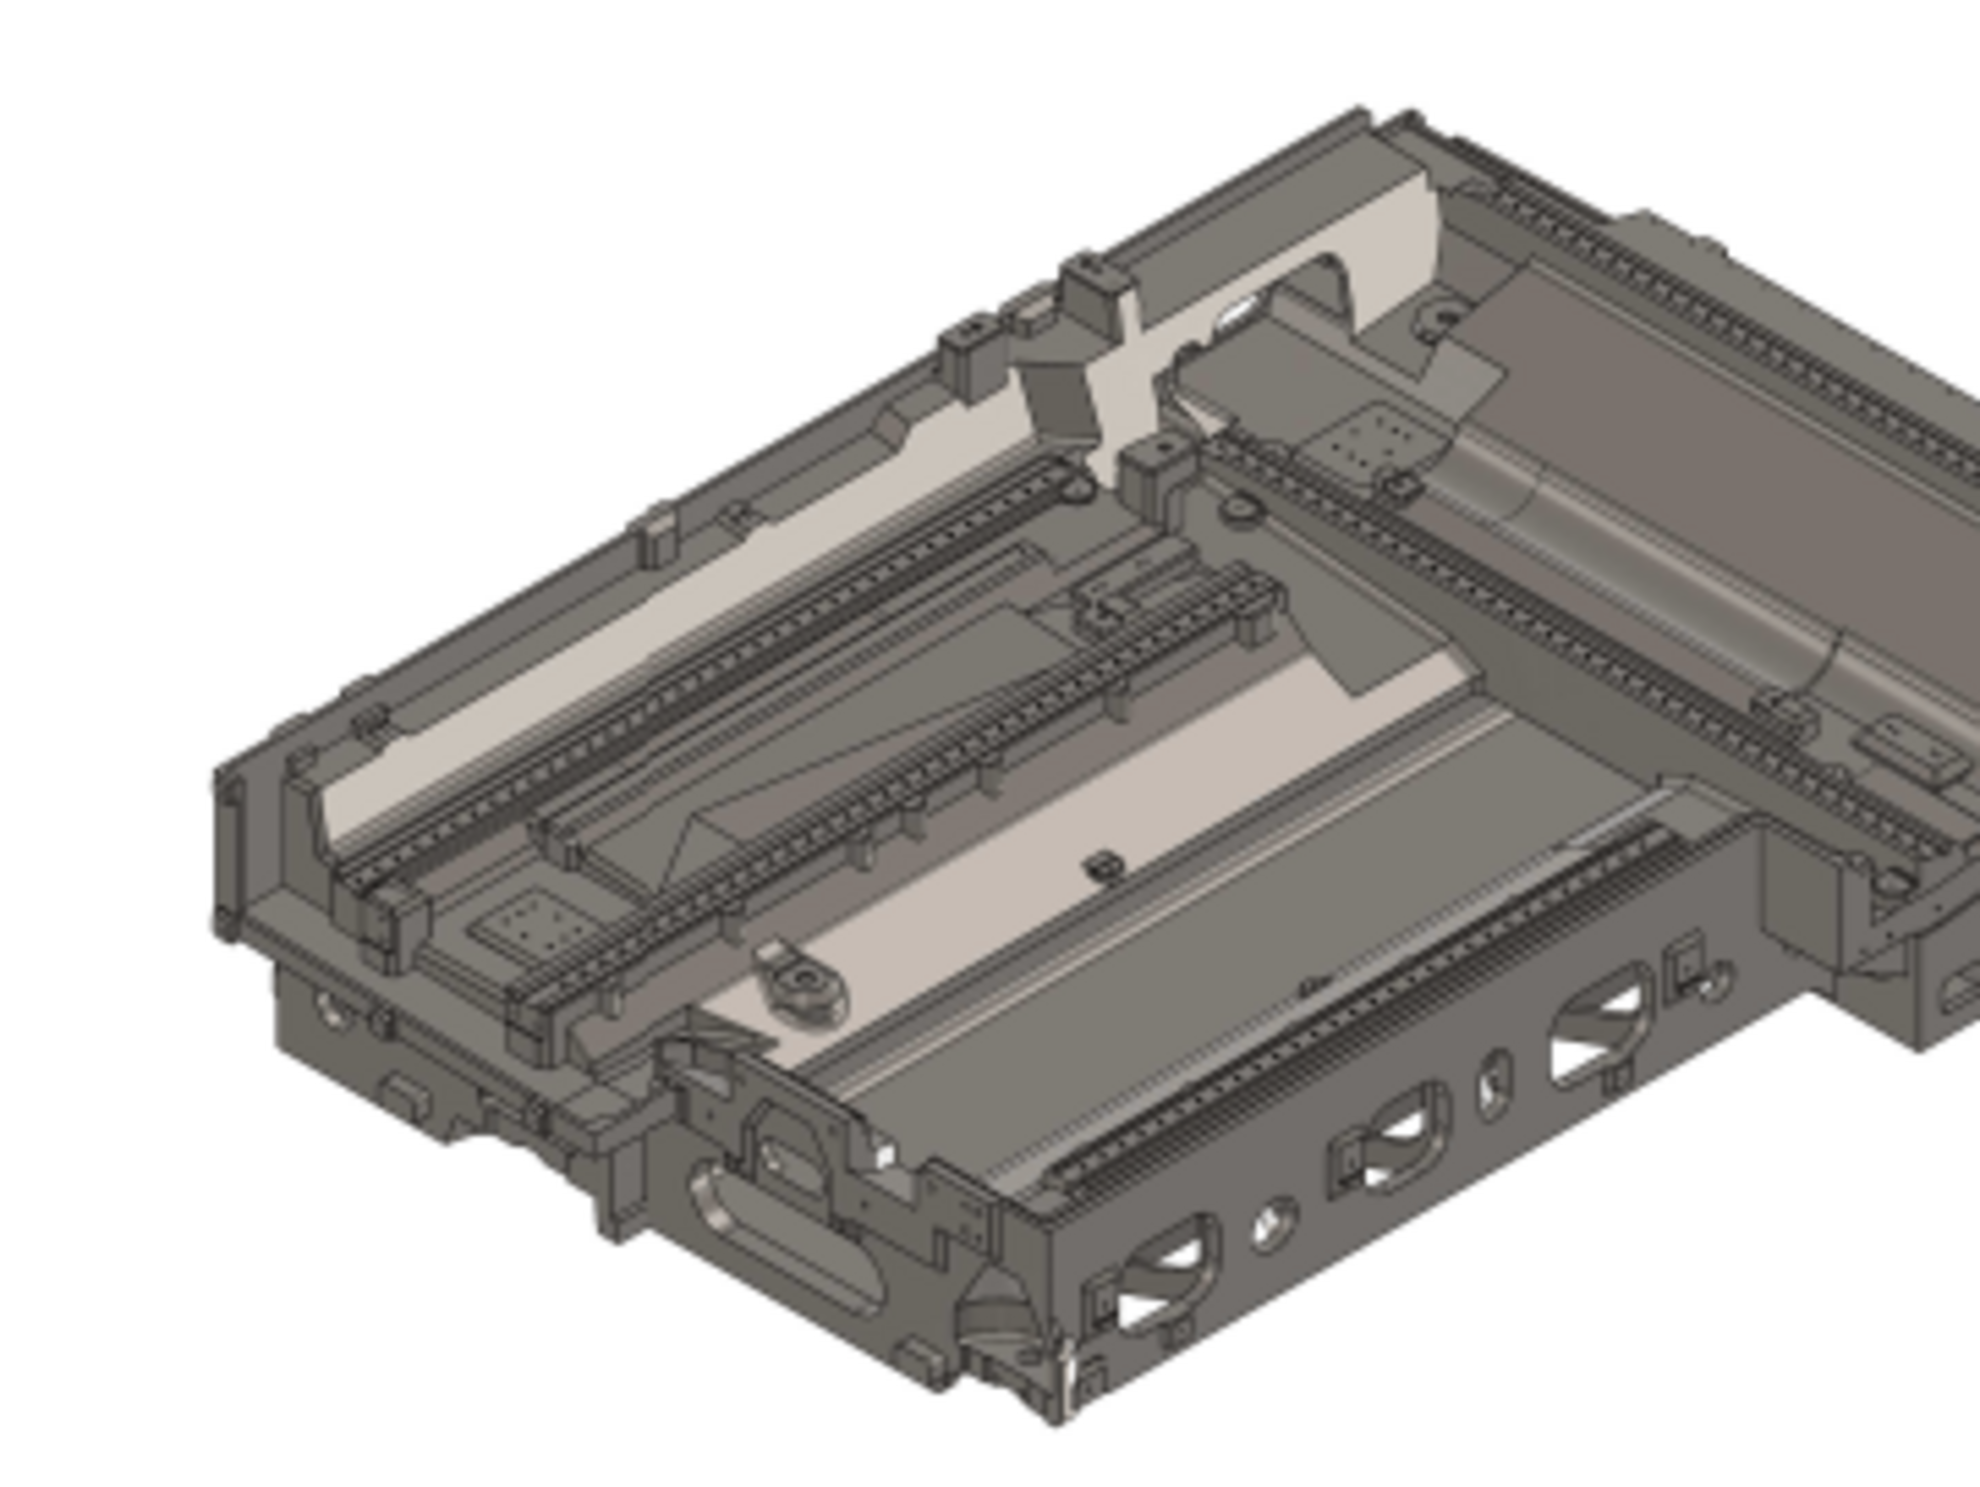 3D gerendertes Bild von einem Maschinenbett in der Maschinenbautechnik.